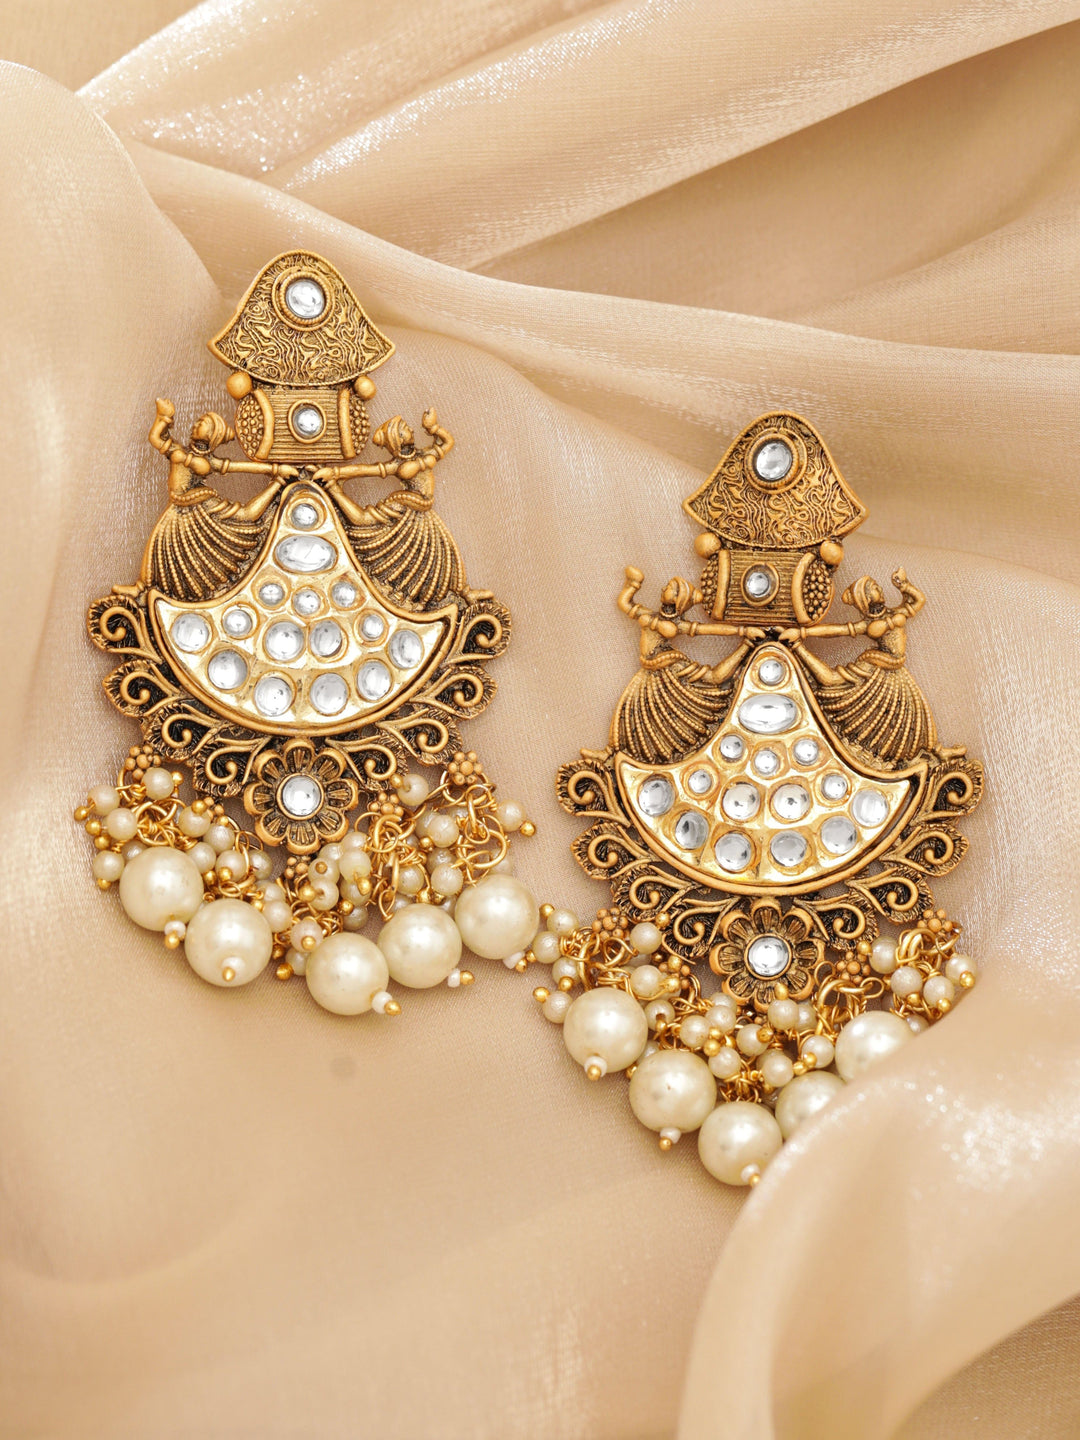 Rubans Gold-Toned Chandelier Earrings with Dangling Pearls Earrings